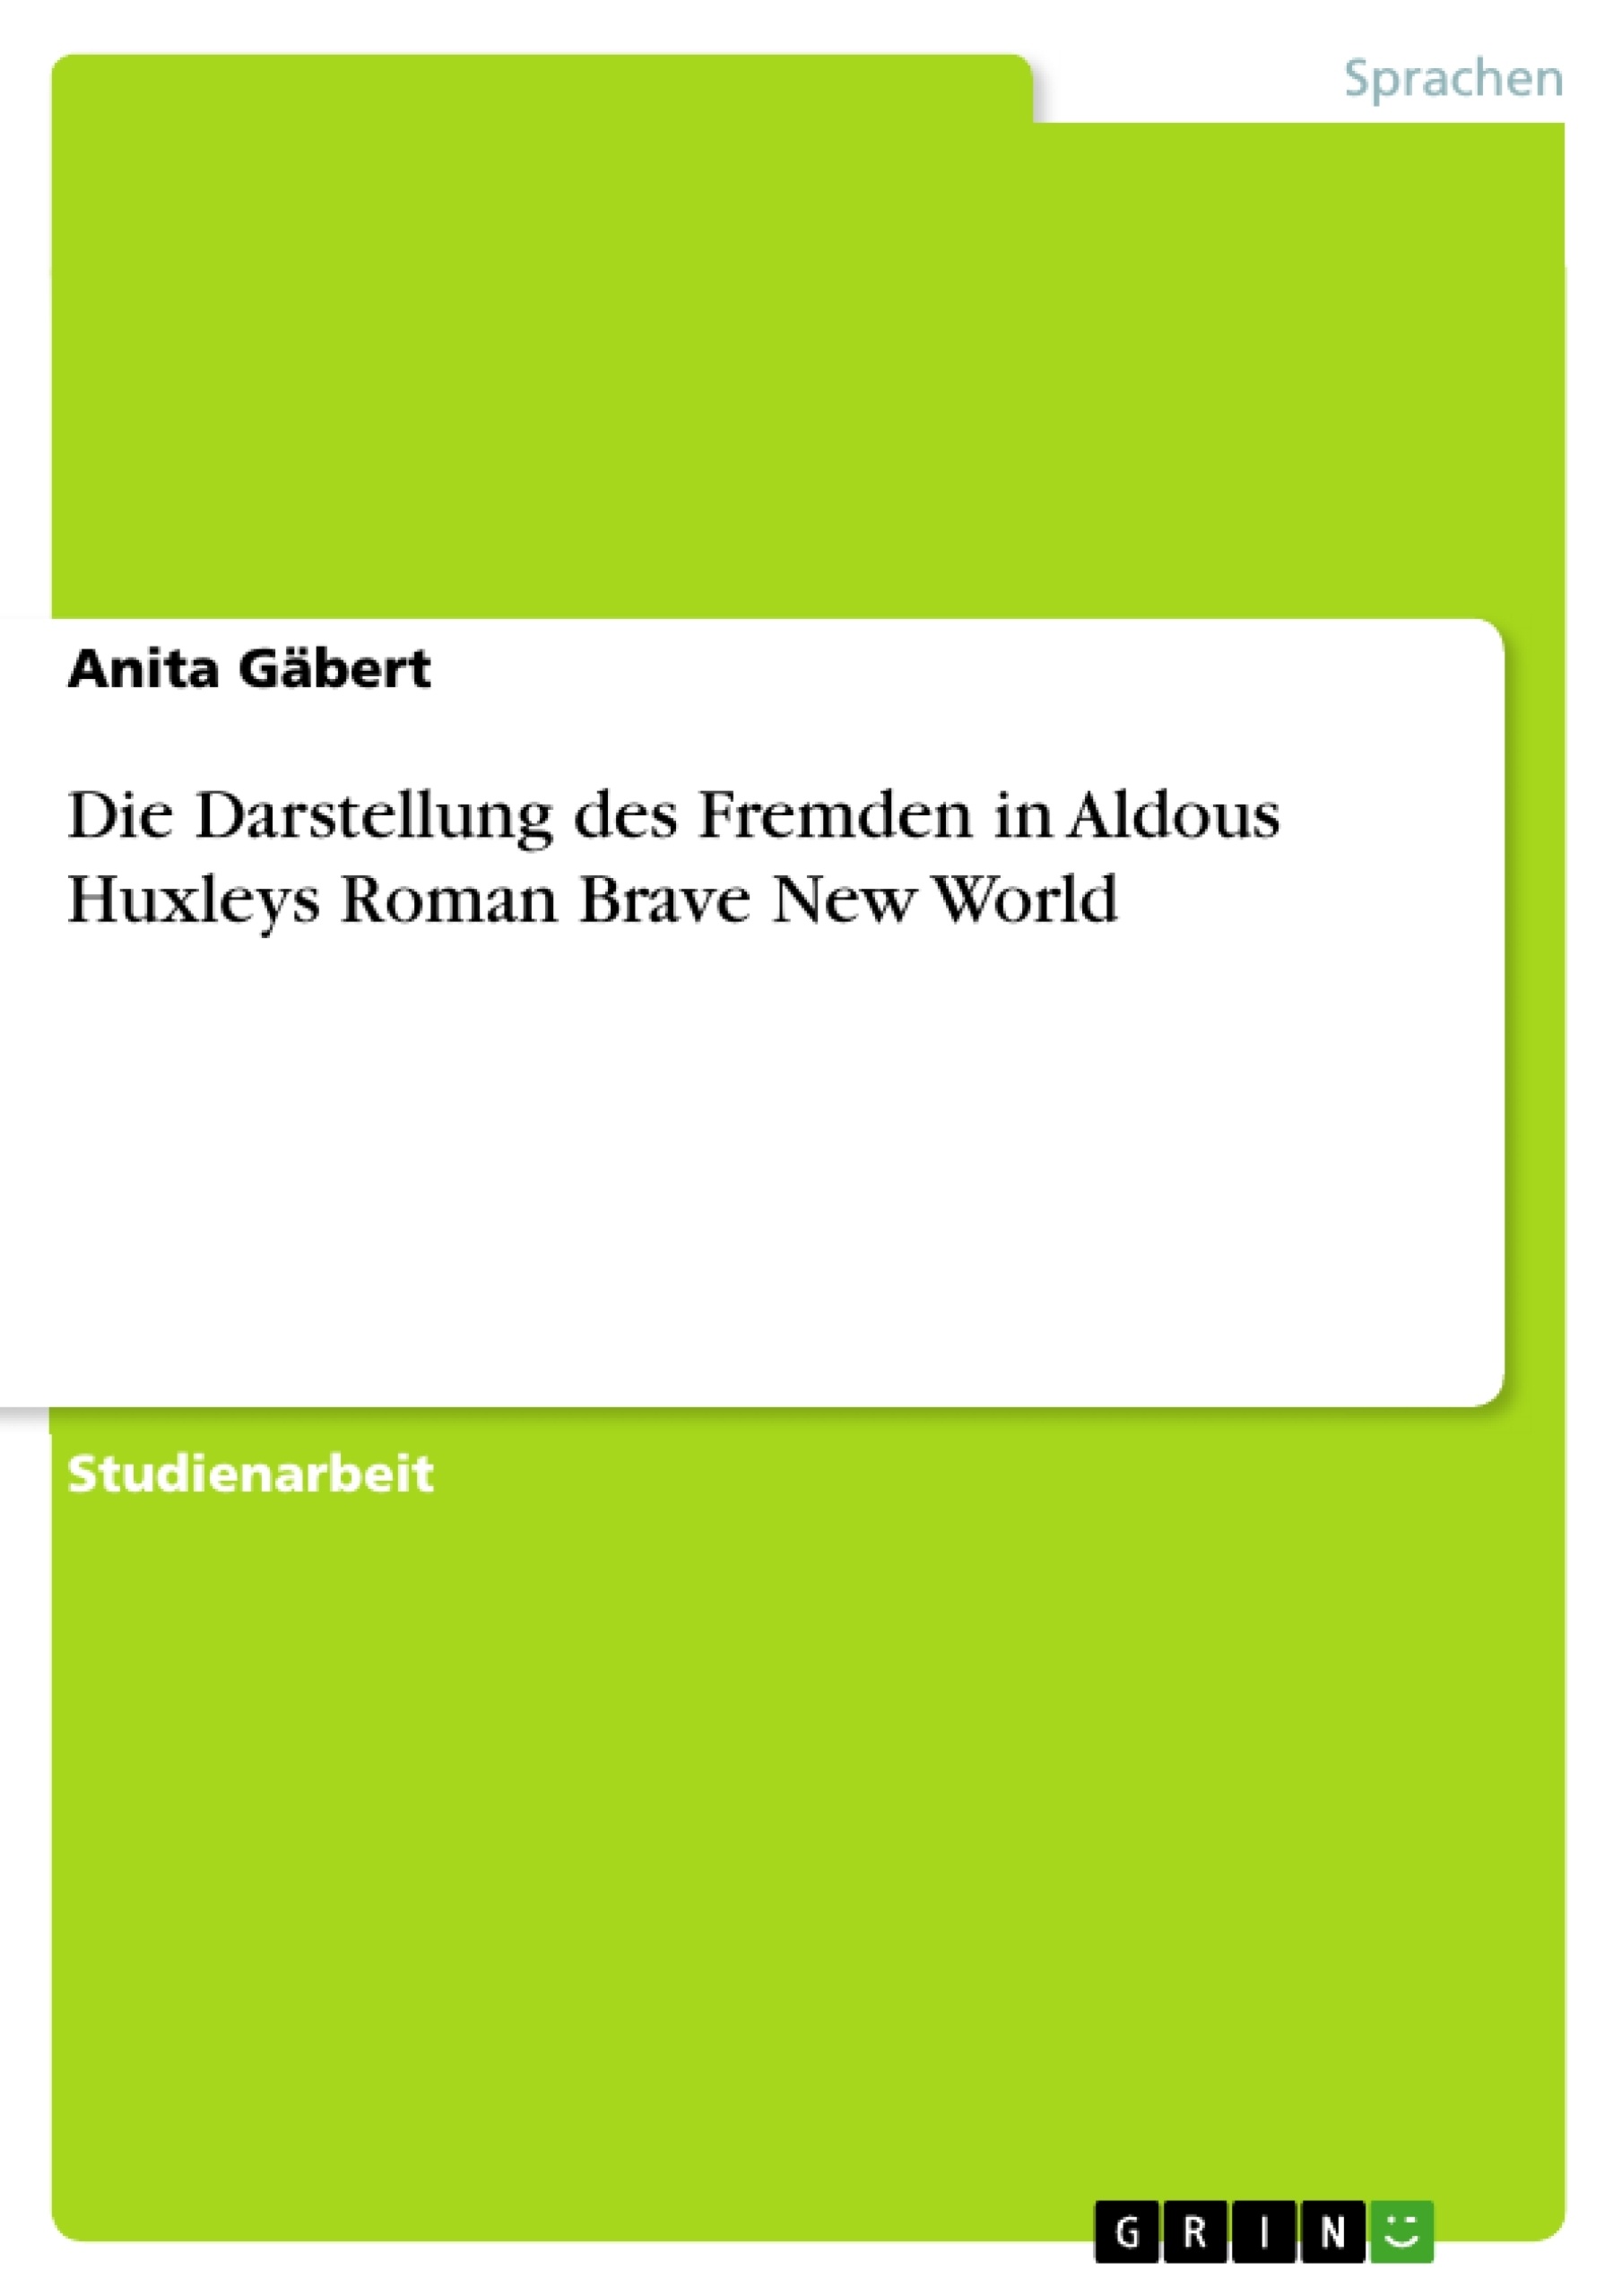 Título: Die Darstellung des Fremden in Aldous Huxleys Roman Brave New World